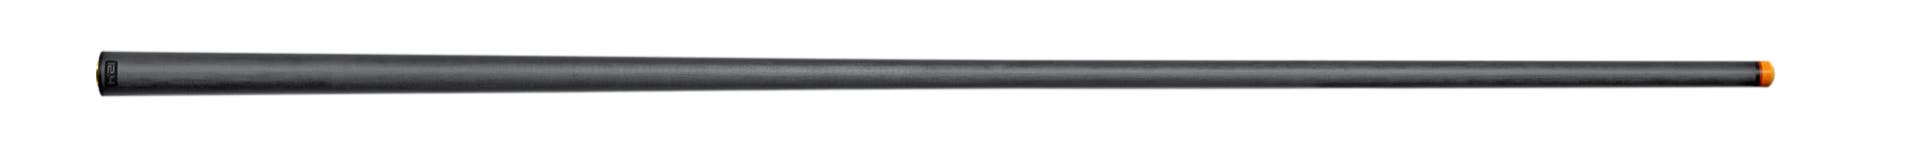 Predator REVO 12.4 mm Shaft for 5/16x14 Joint - Black Vault Plate